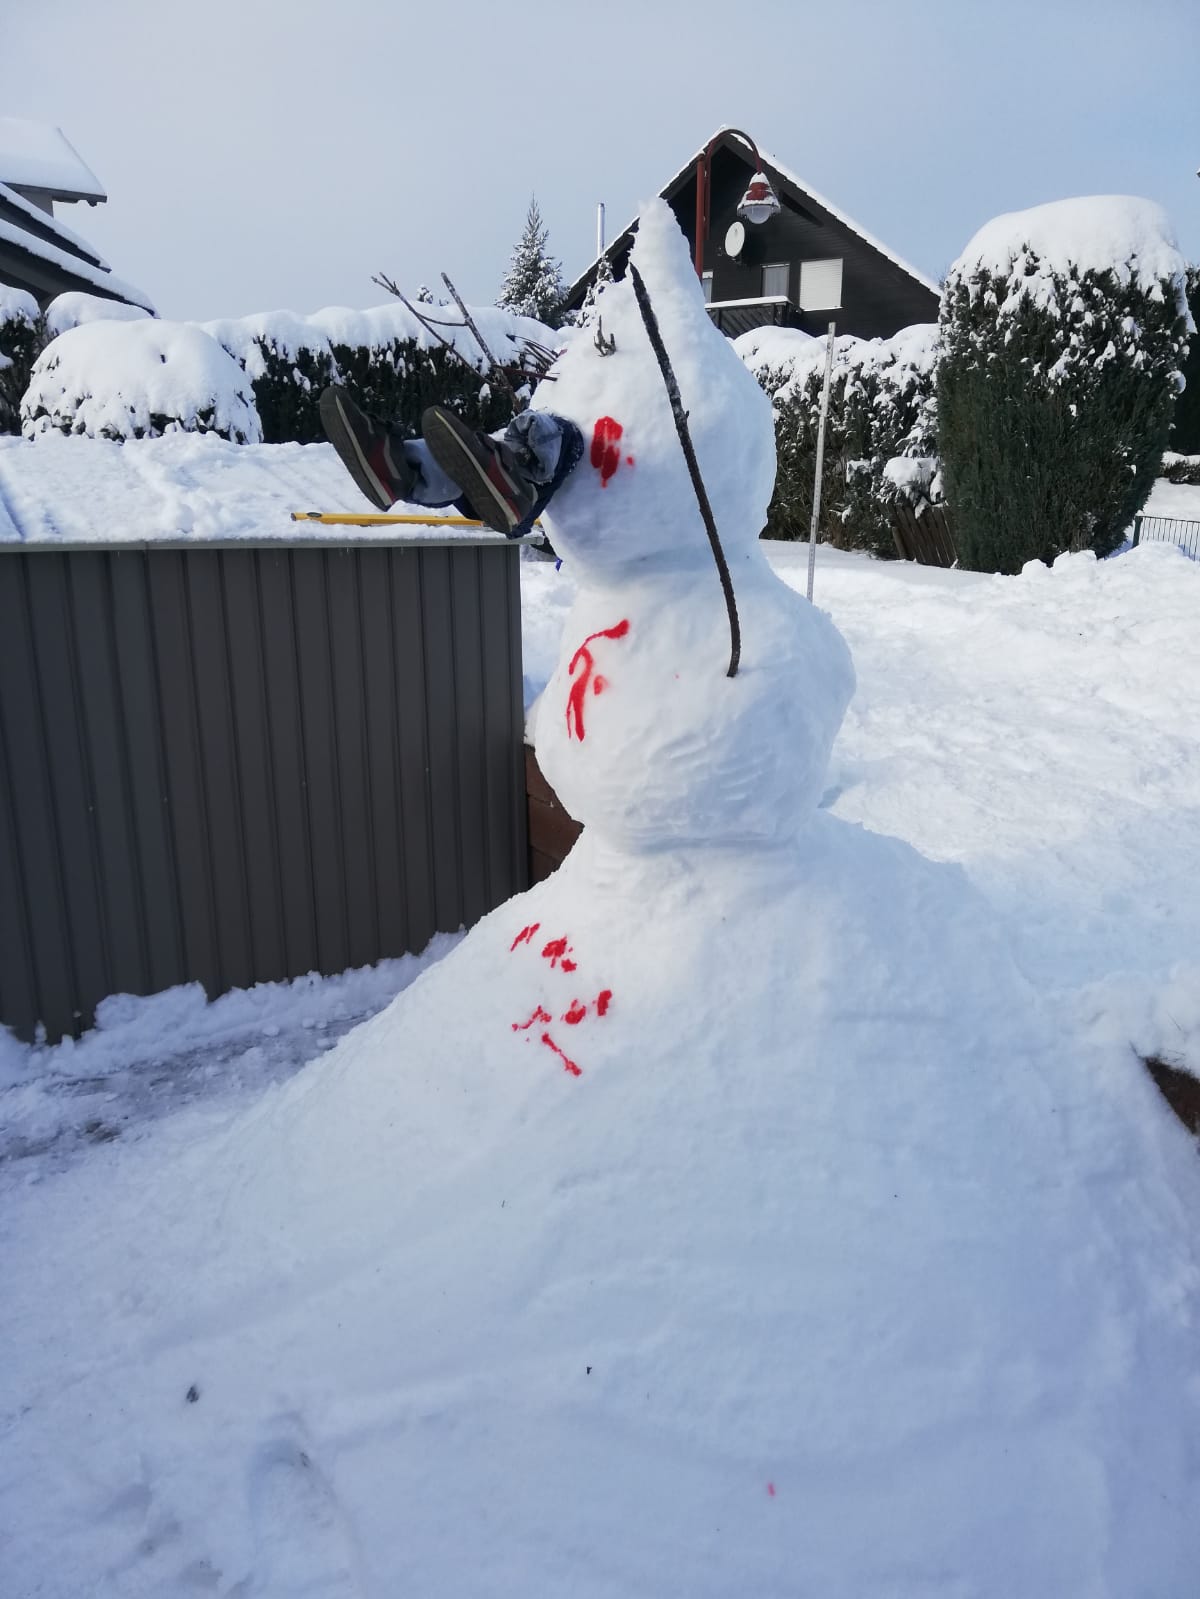 Bisschen bissig ist der Schneemann von Pierre. Mit 2,13m beißt er sich an der Spitze fest.